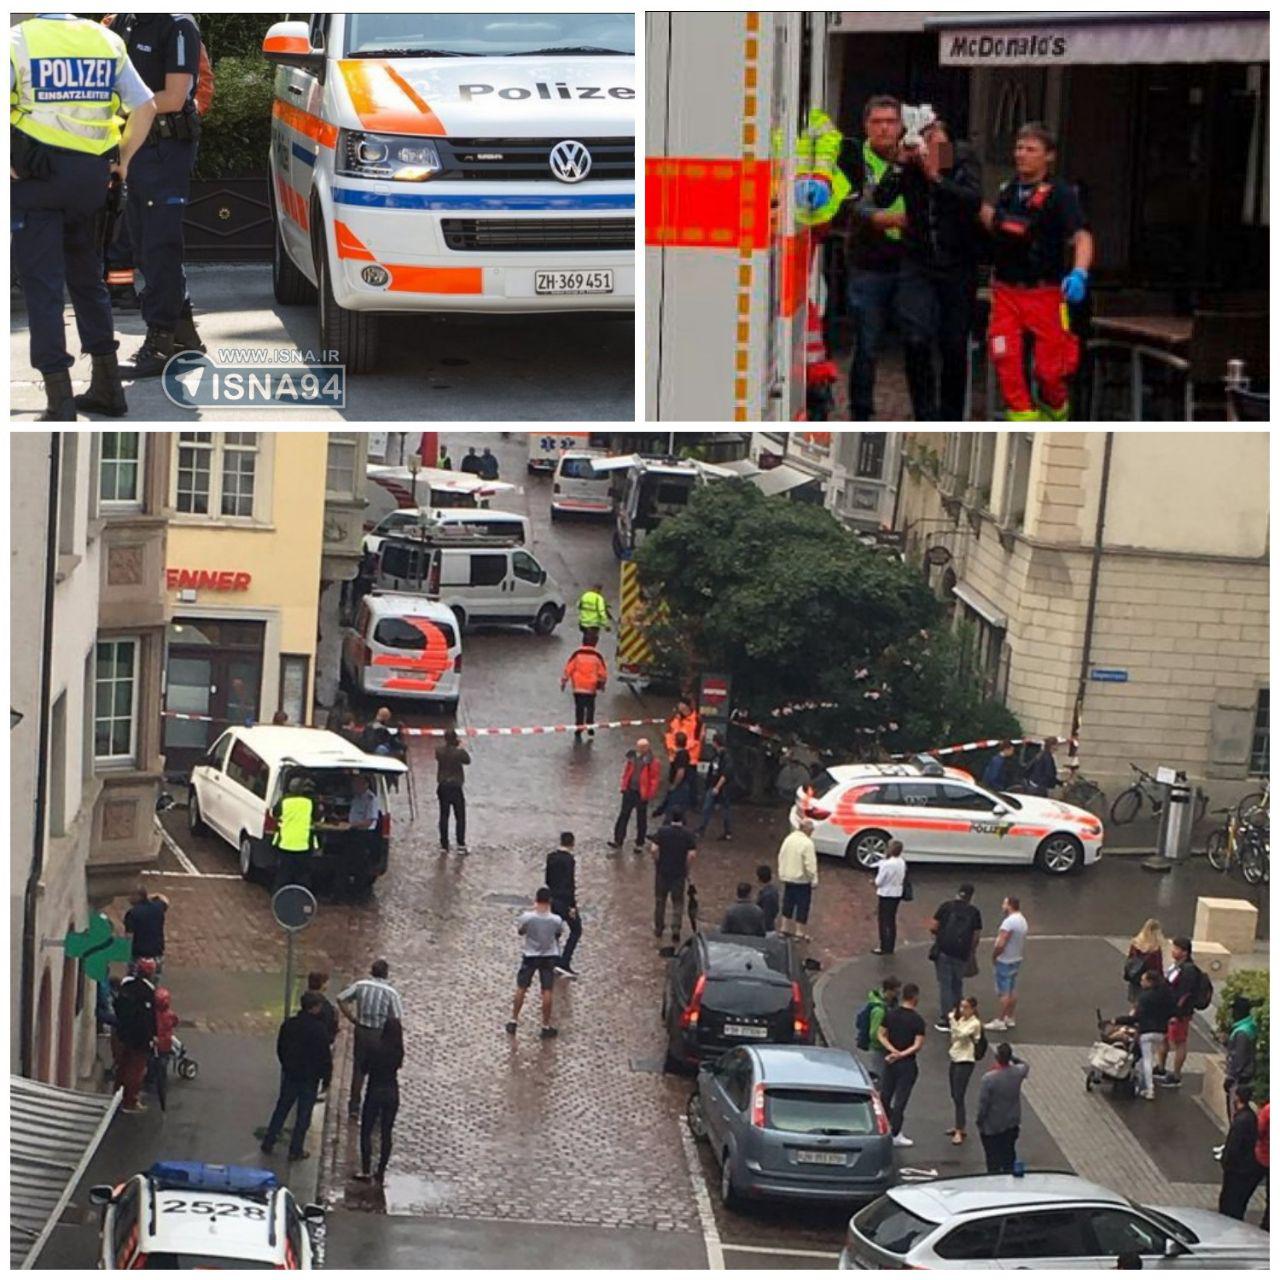 حمله به مردم در سوئیس با اره برقی/ 5 نفر زخمی شدند